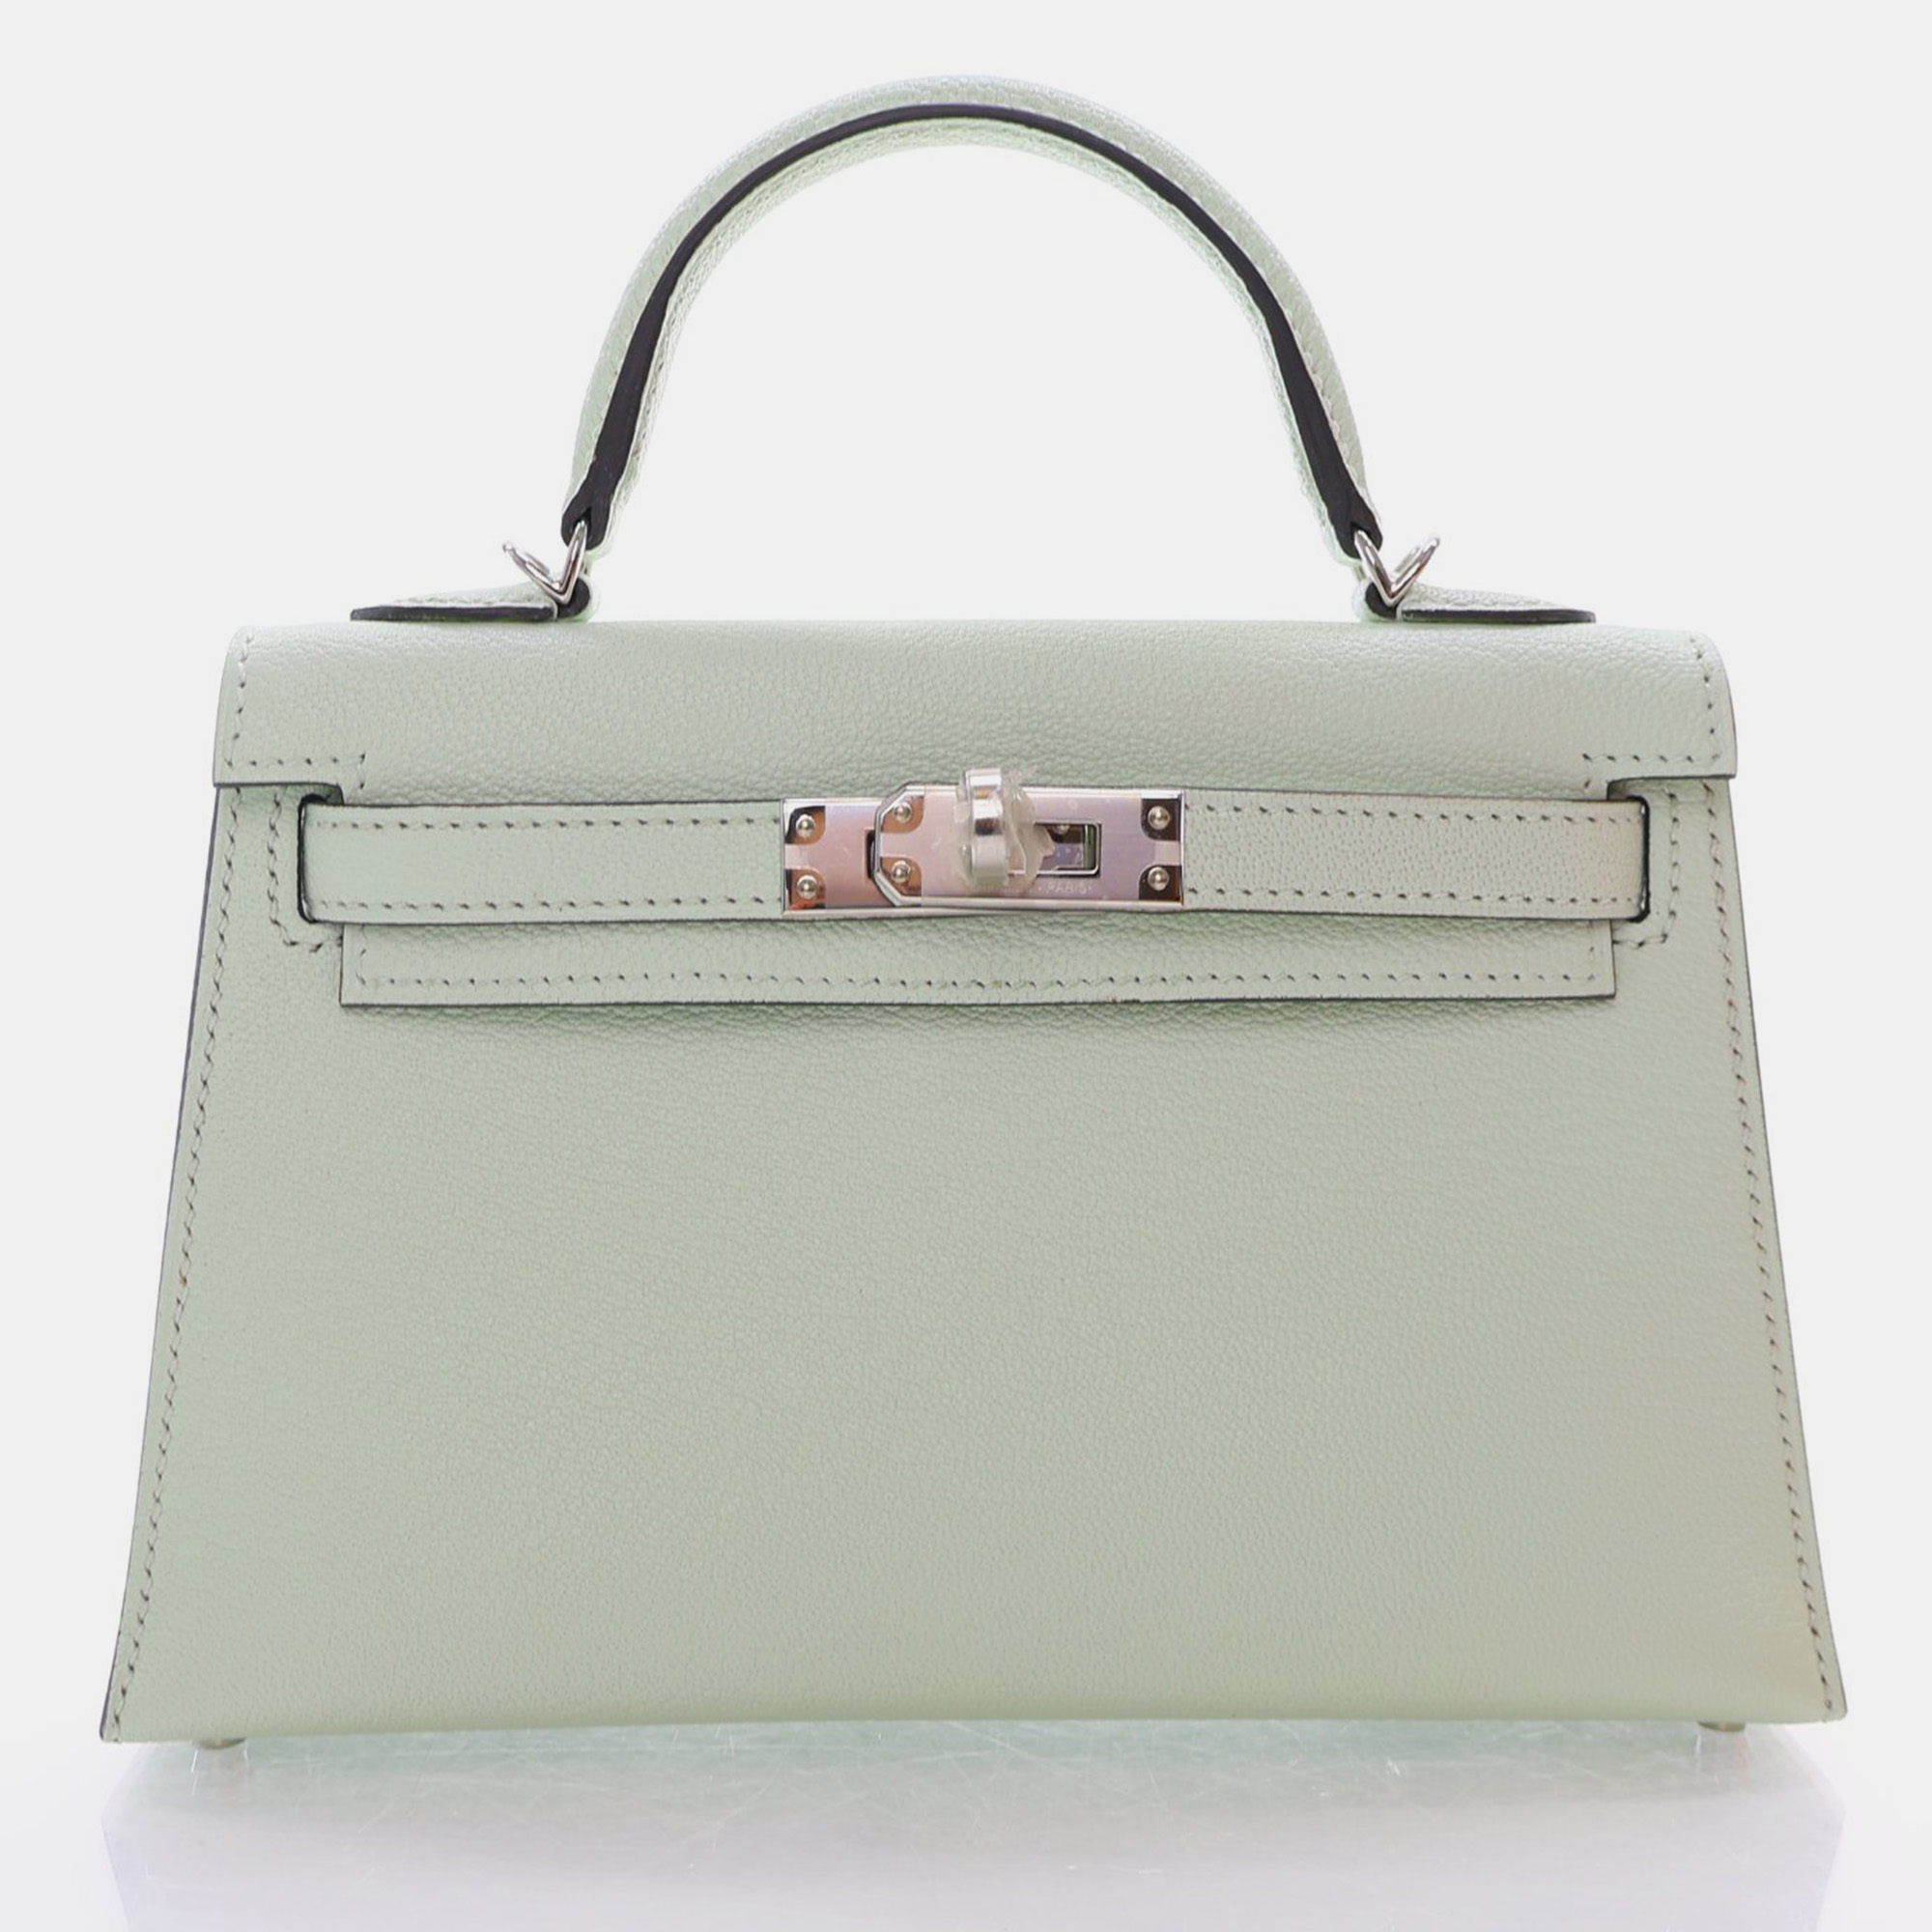 Hermes vert fizz chevre mysore mini kelly handbag